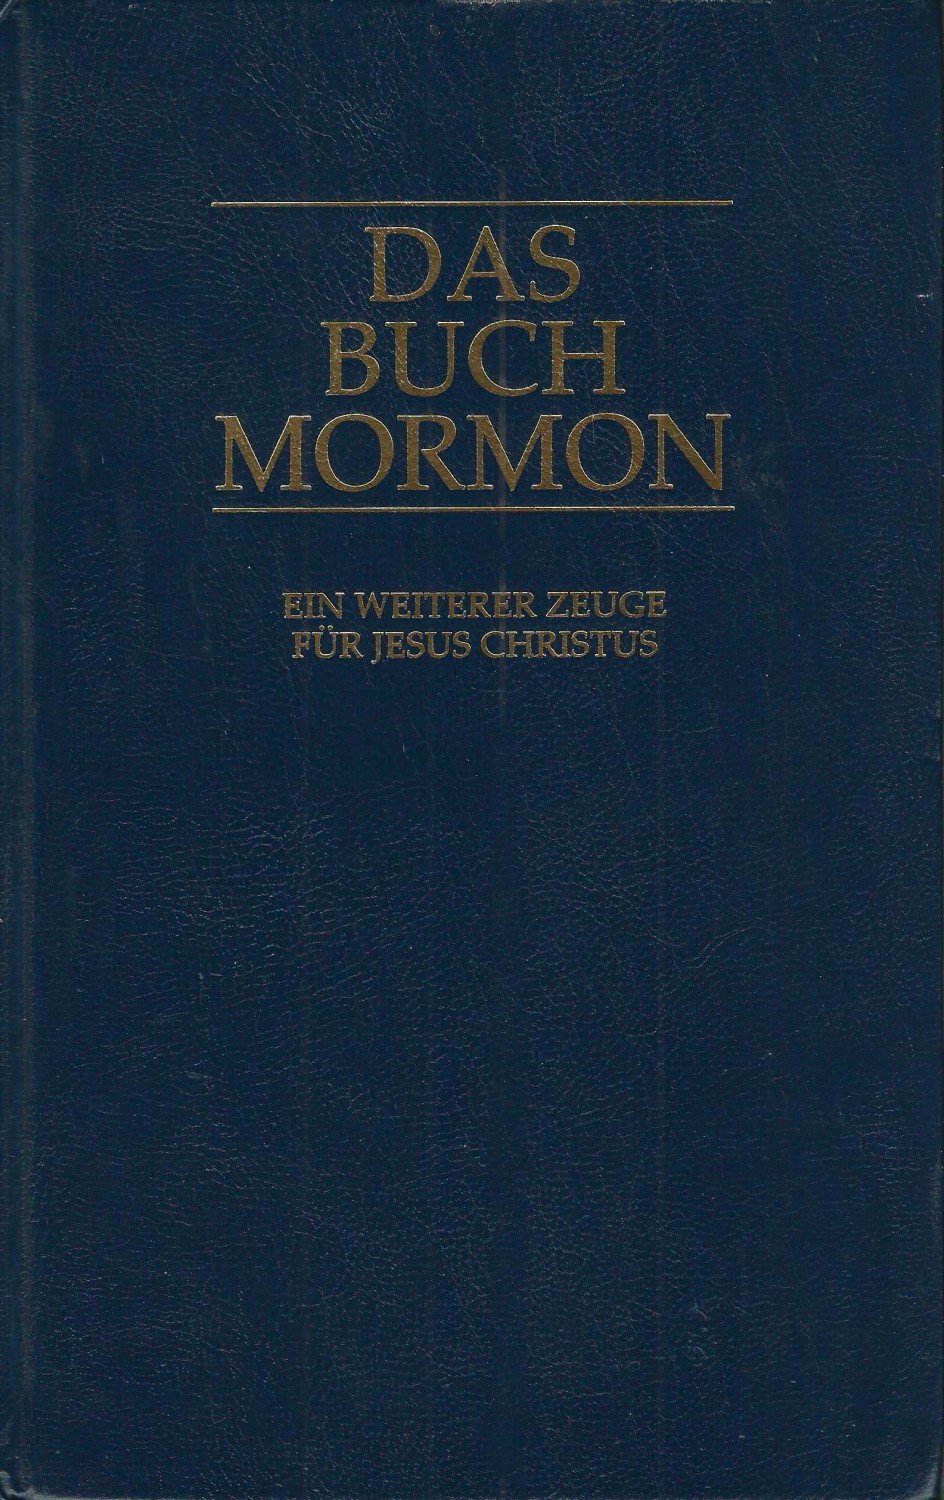 Das Buch Mormon Ein Weiterer Zeuge Fur Jesus Christus Joseph Schmidt Von Buch Gebraucht Kaufen A02ase8v01zz6